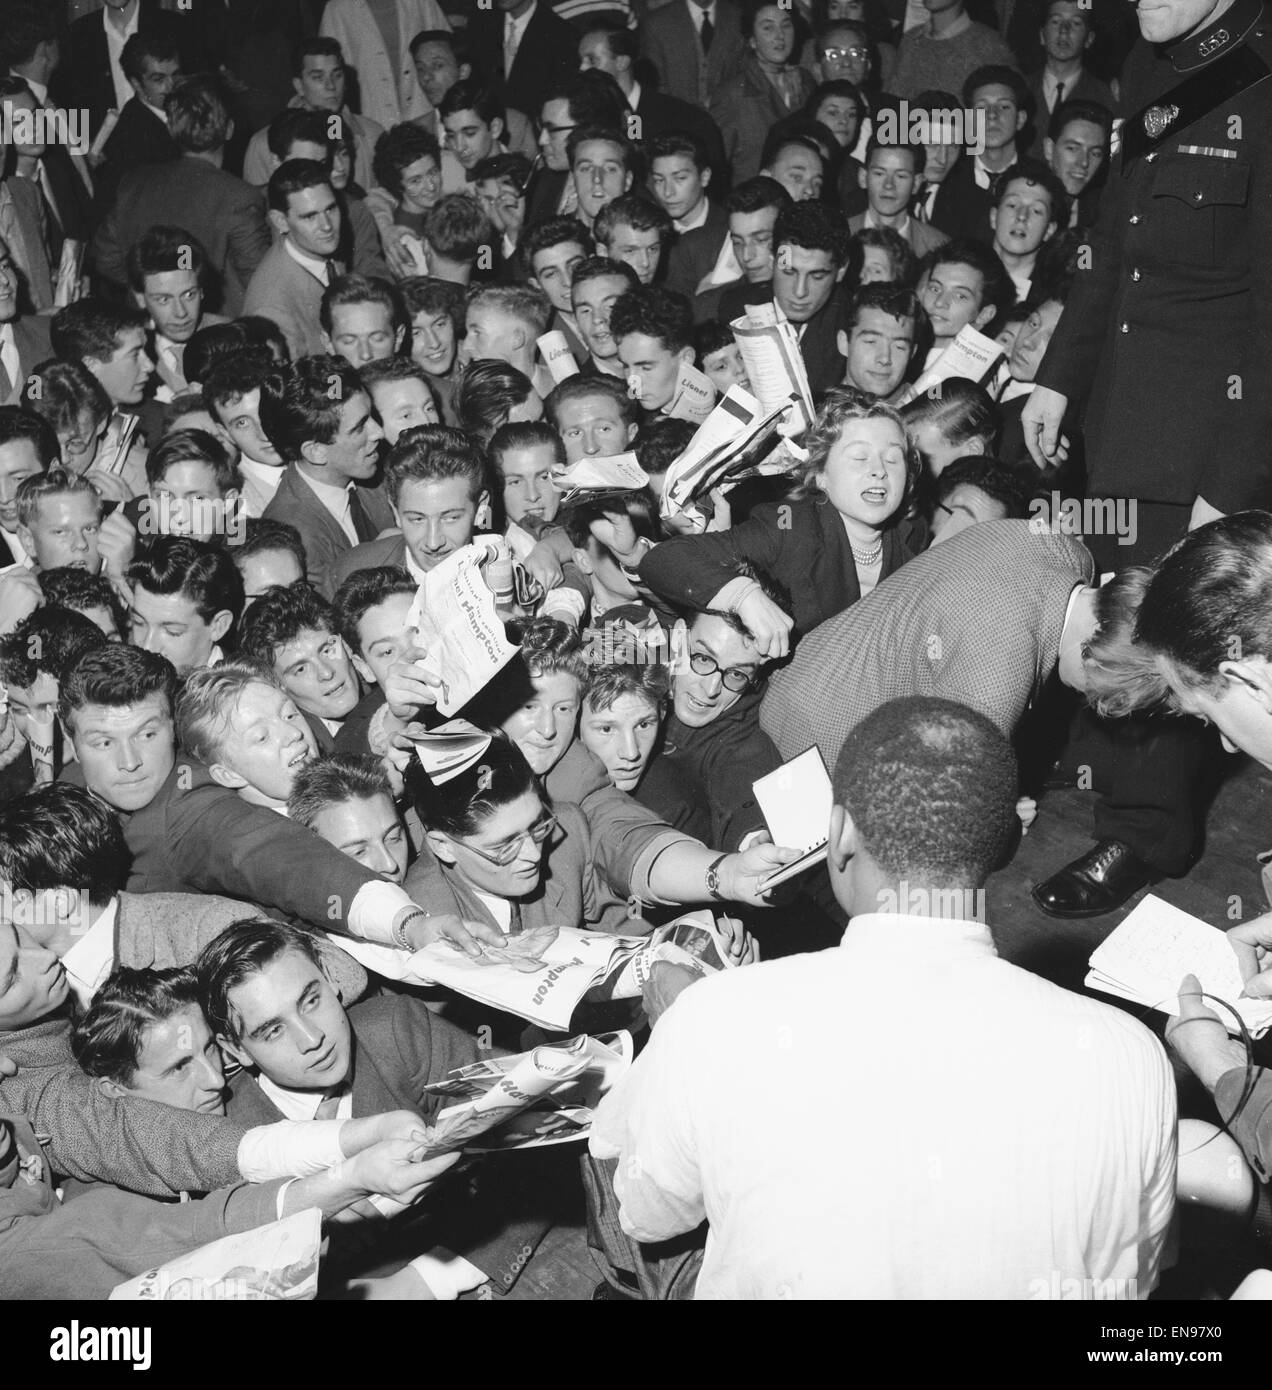 Rush des fans pour l'autographe de la légende du jazz Lionel Hampton à l'Empress Hall, Londres. 21 Octobre 1956 Banque D'Images